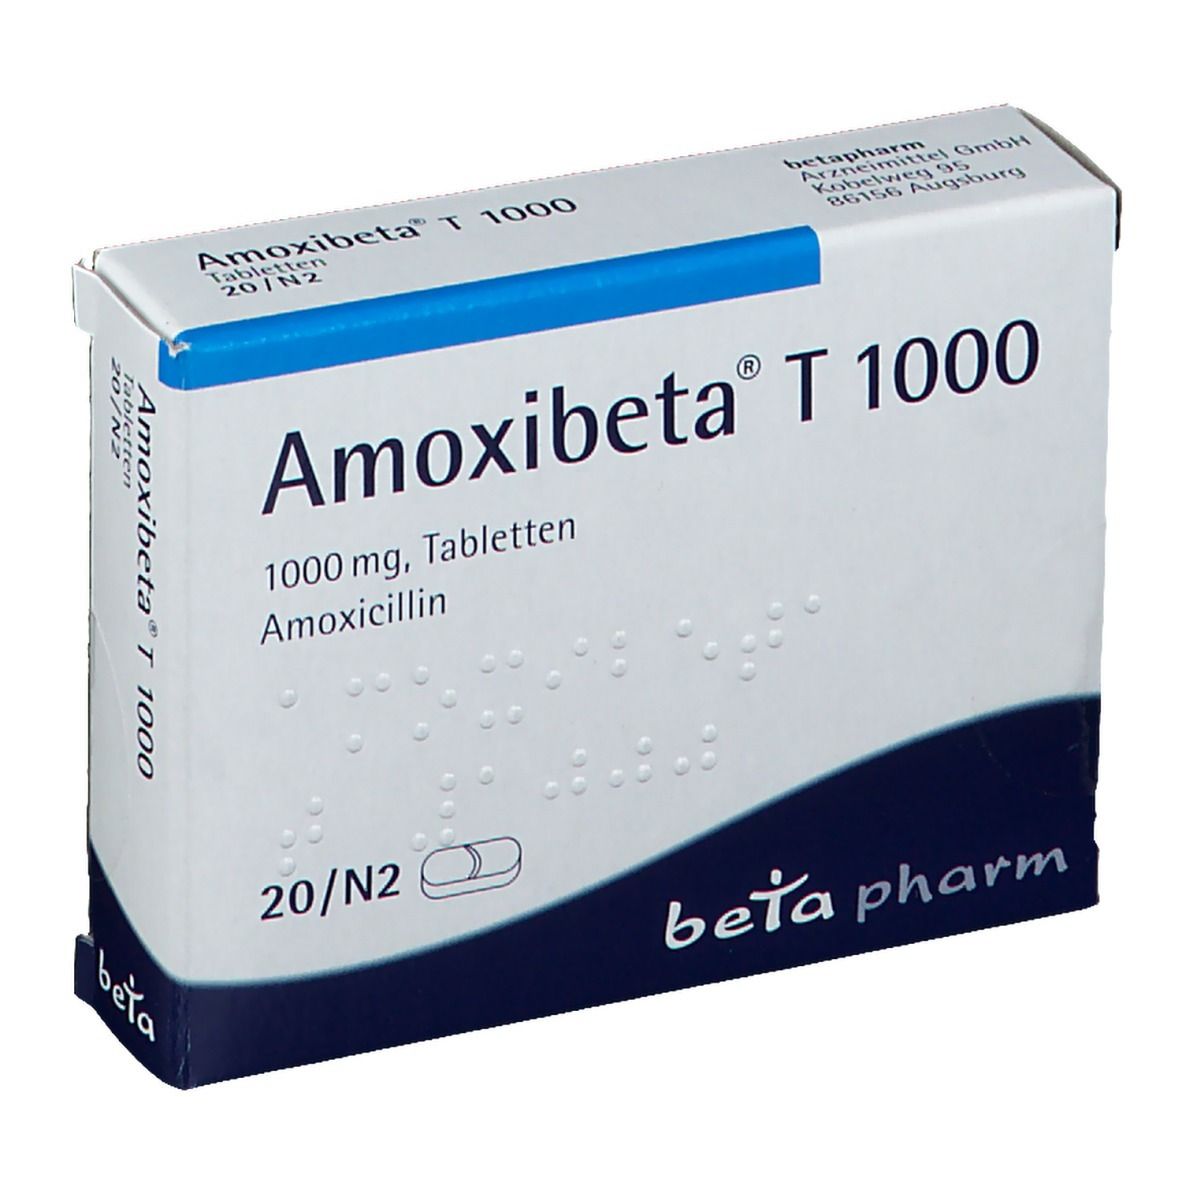 Amoxibeta® T 1000